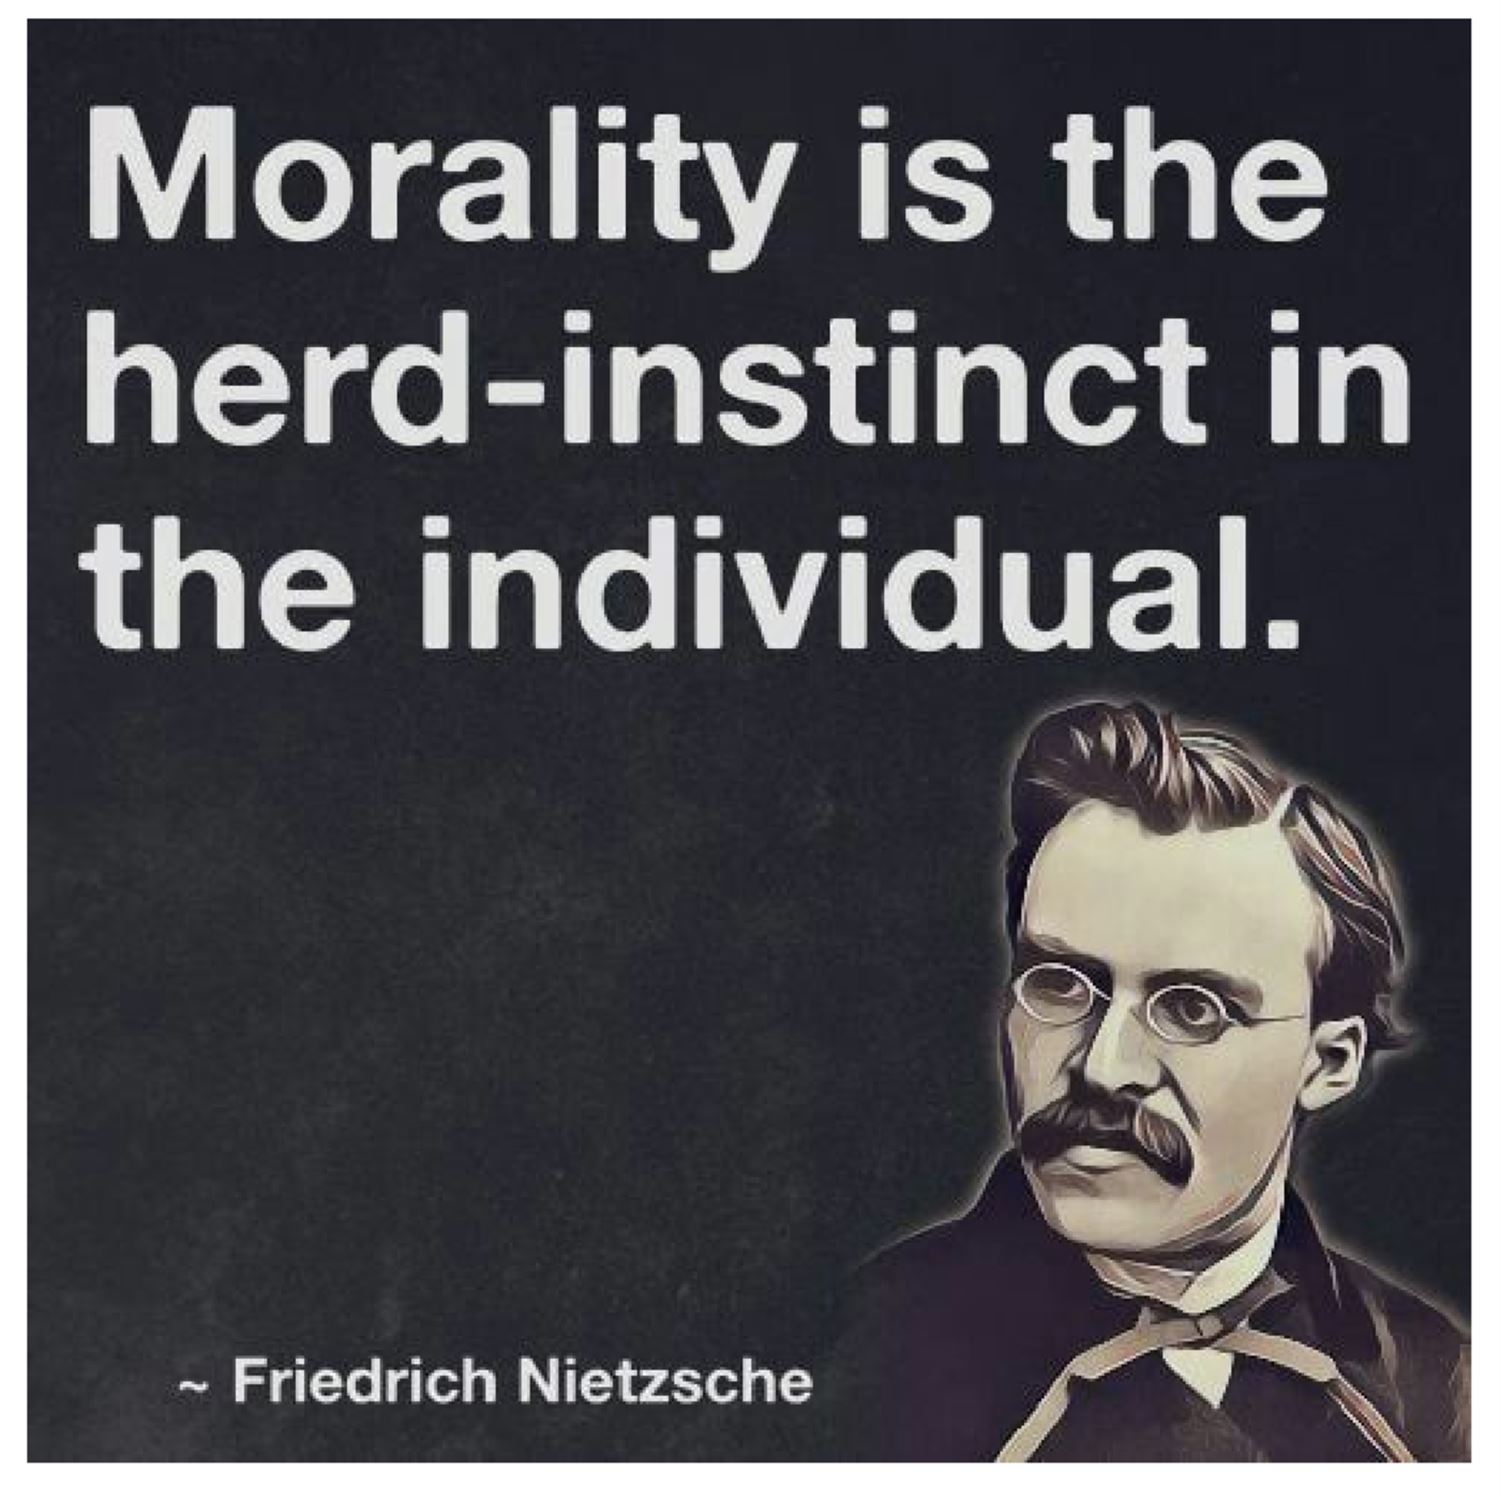 Nietzsche's herd mentality